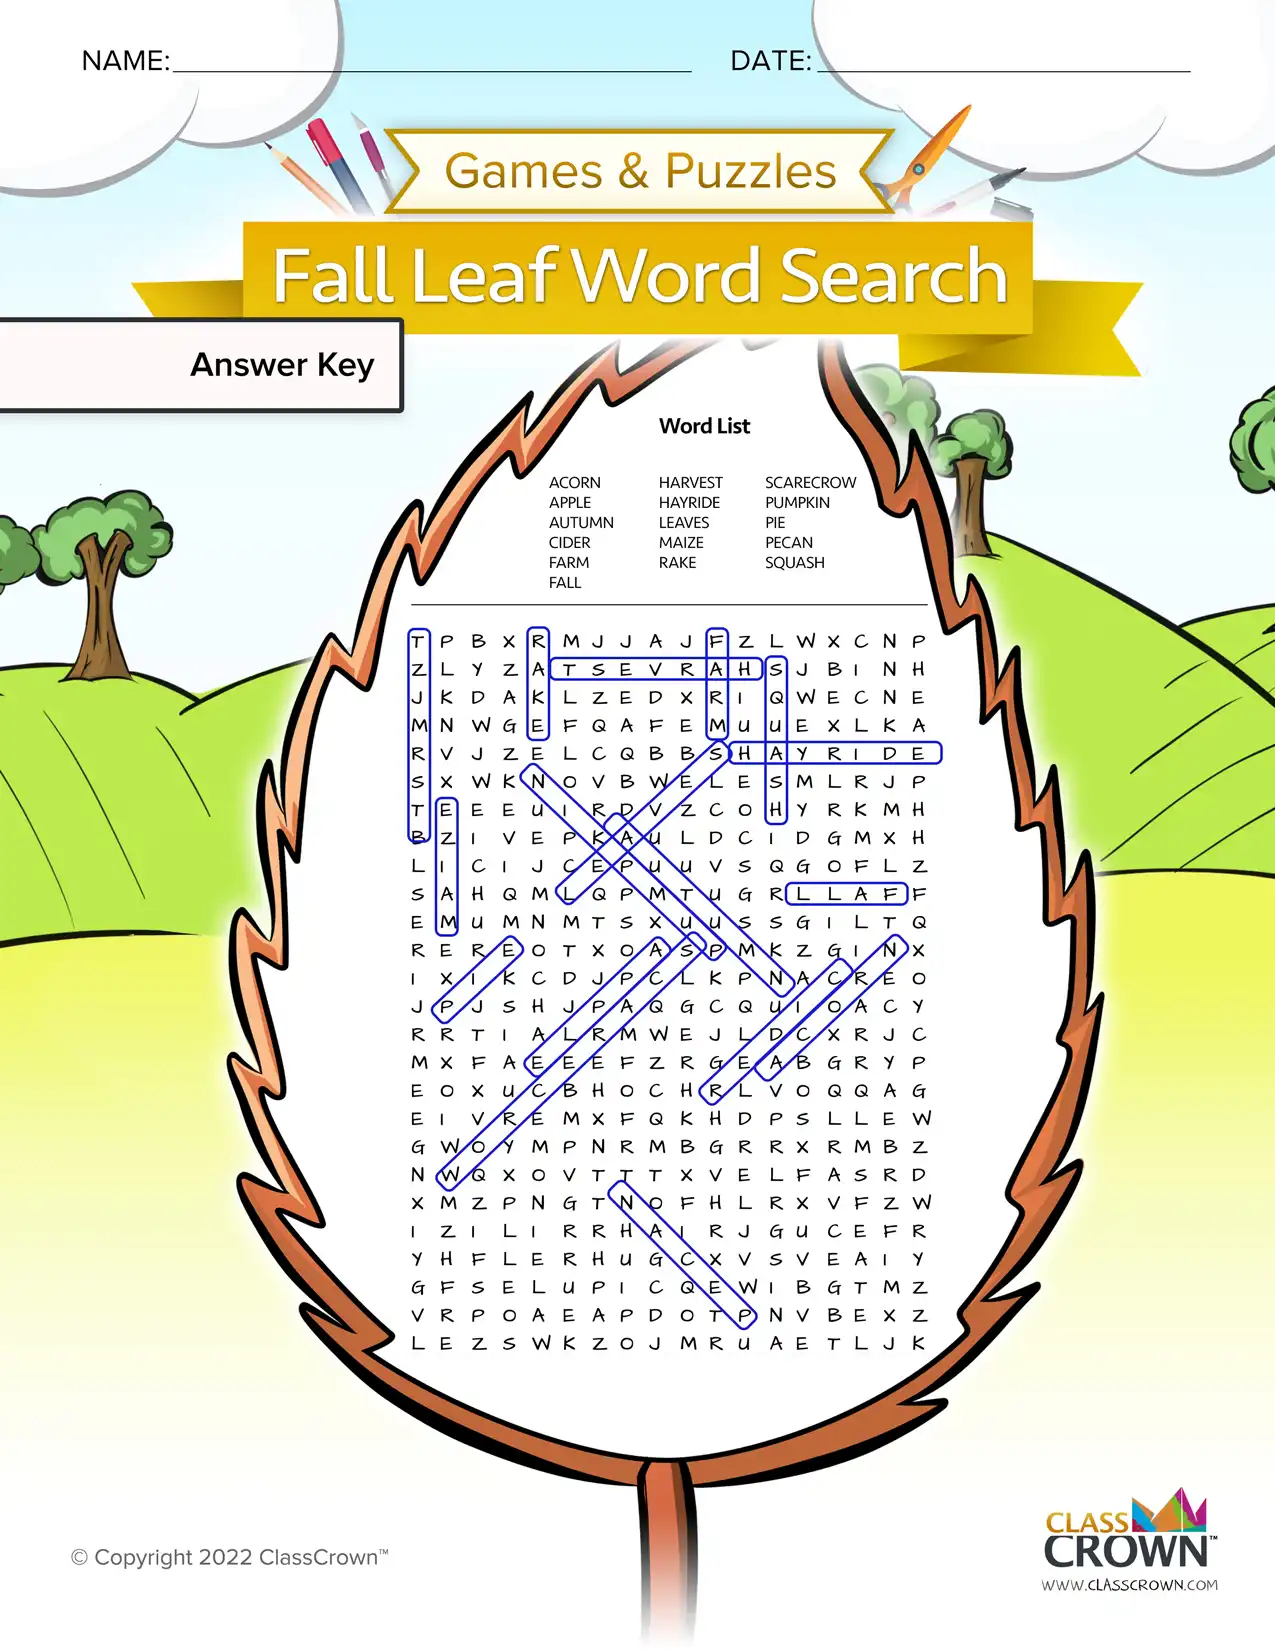 Fall word search, leaf - answer key.